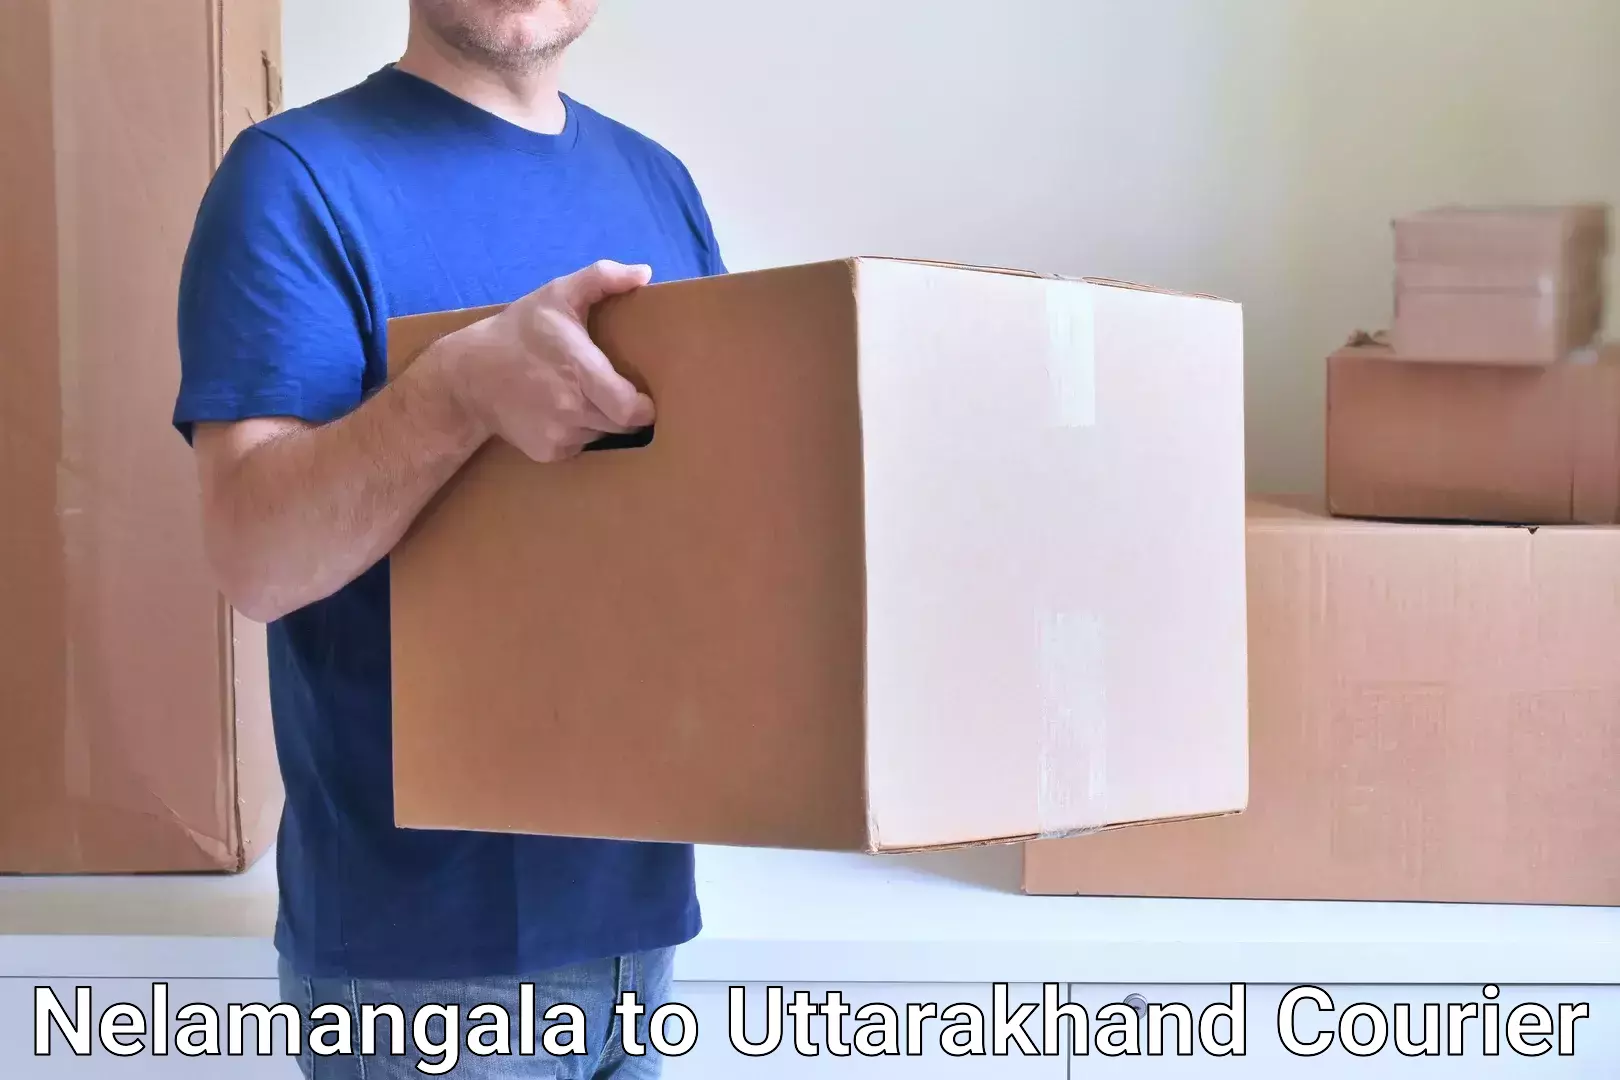 Efficient freight service Nelamangala to Uttarakhand